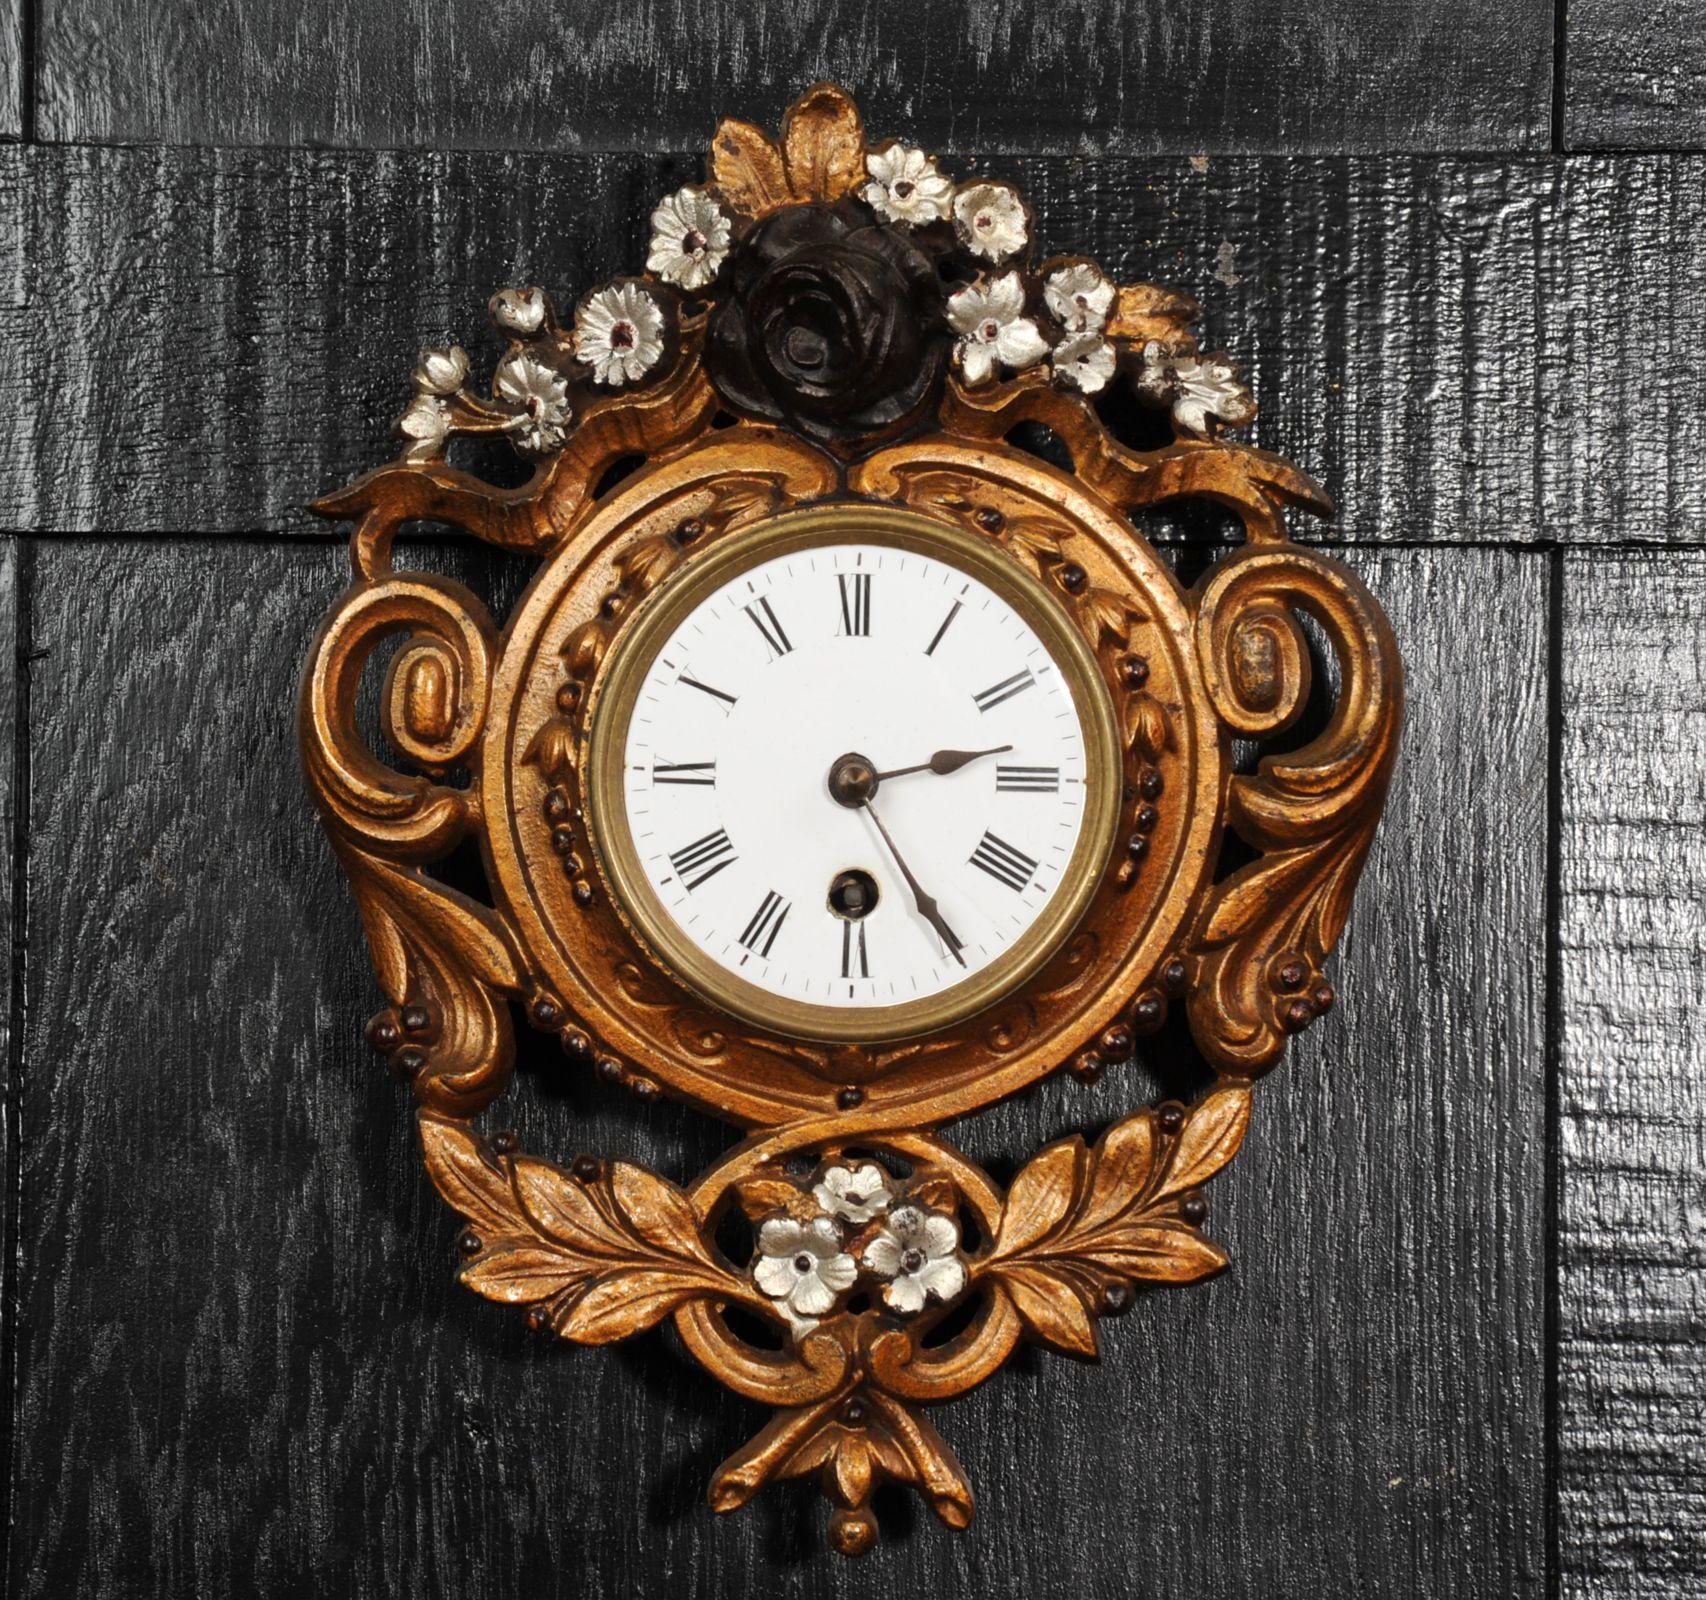 Une charmante horloge murale française ancienne par le célèbre fabricant Japy Frères. Magnifiquement modelé avec des rinceaux feuillus et des fleurs, il est peint avec une laque dorée et les fleurs sont rehaussées d'argent et de noir. La laque s'est